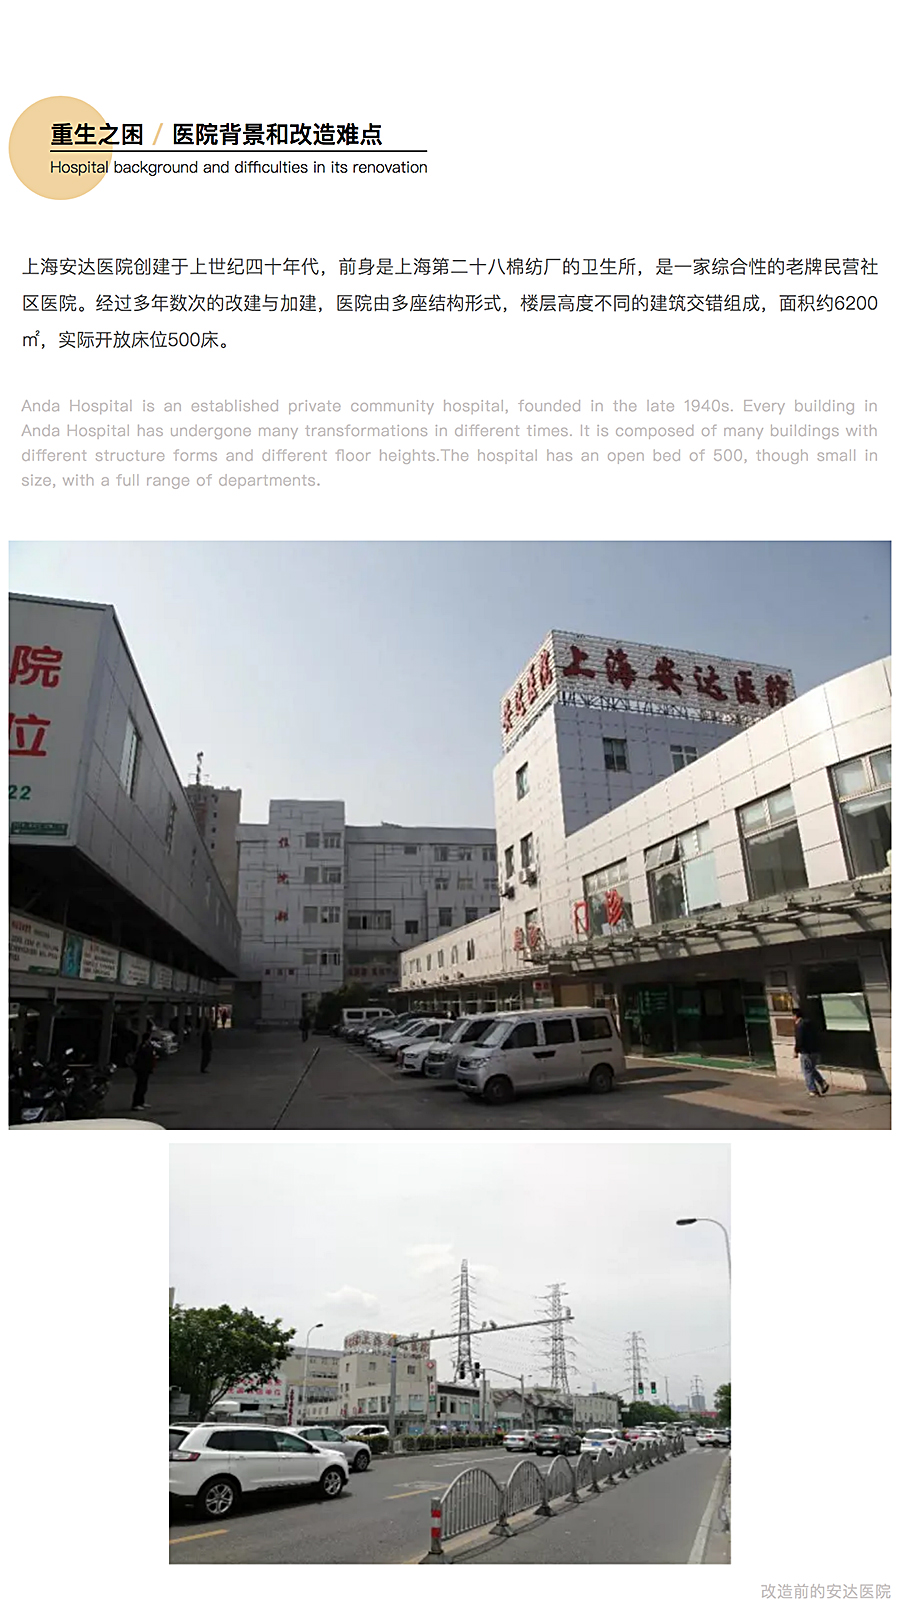 ⽆微不⾄，精益化思维下的上海安达医院⻔急诊改造_0001_图层-2.jpg